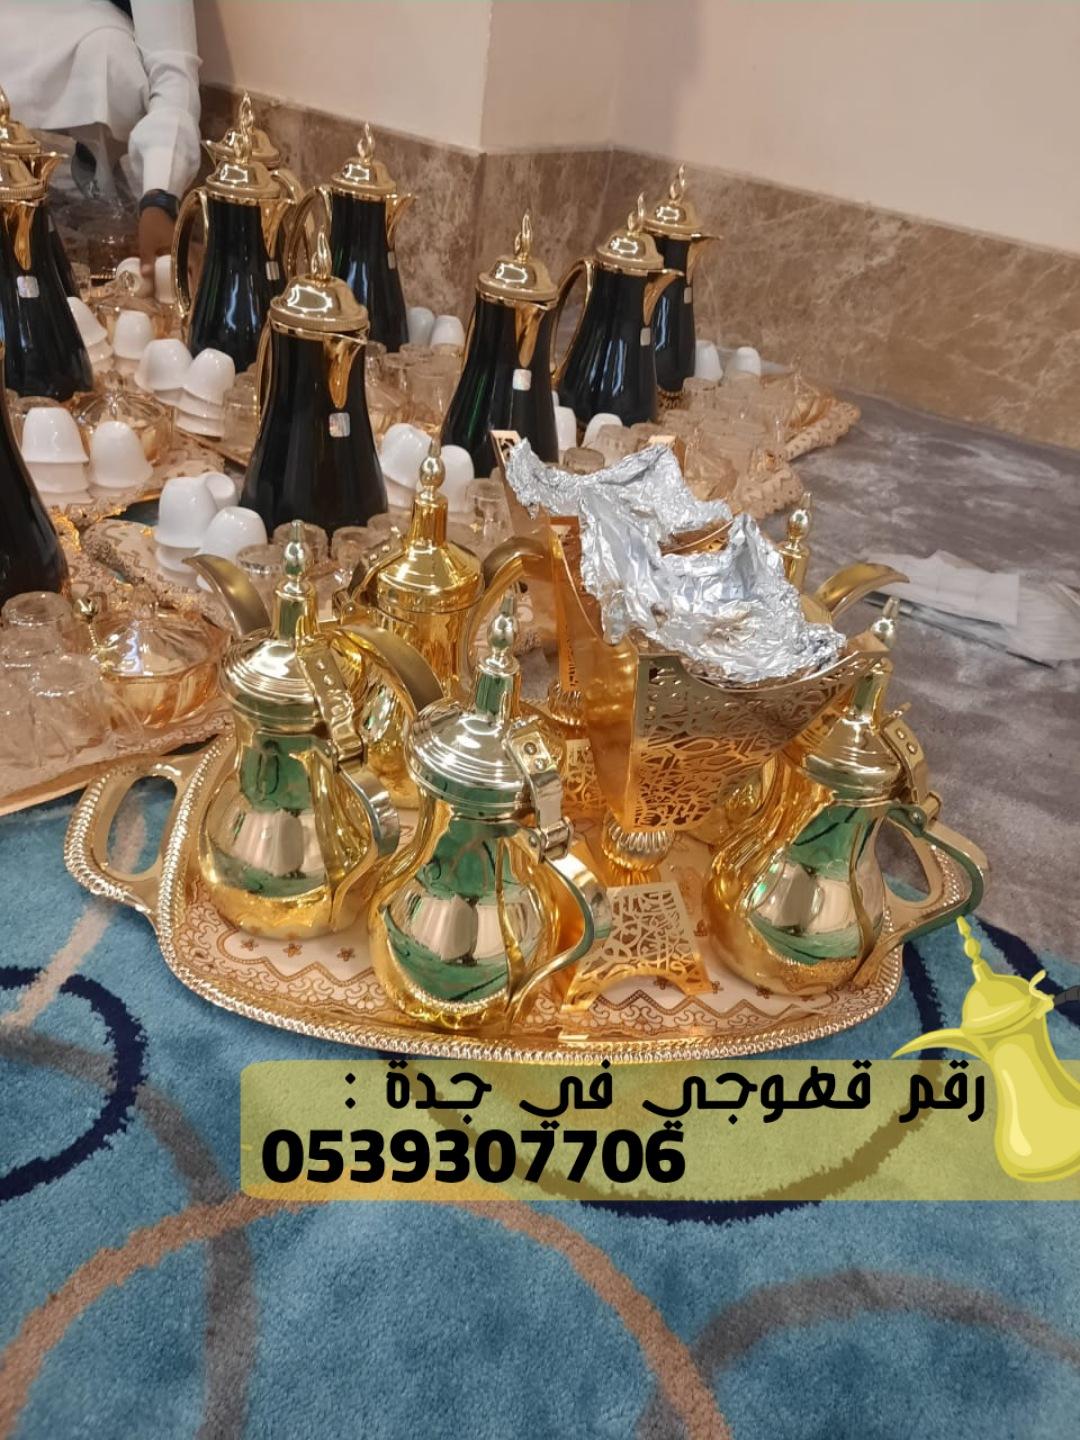 صبابين قهوه قهوجي و مباشرات زواج في جدة,0539307706  494782229